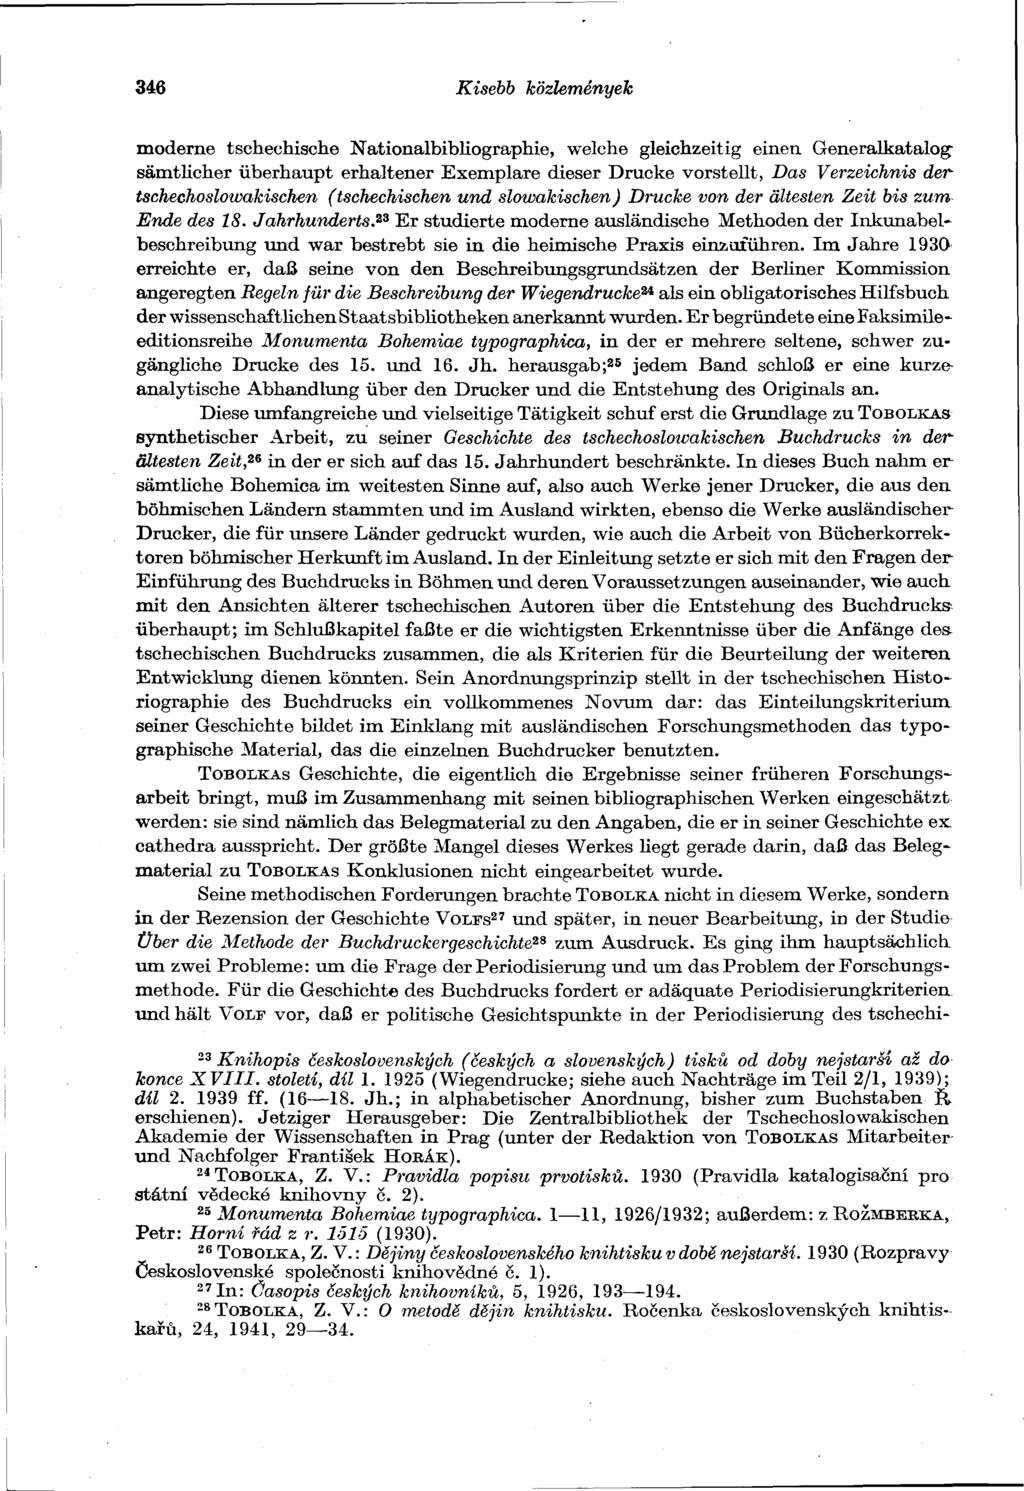 346 Kisebb közlemények moderne tschechische Nationalbibliographie, welche gleichzeitig einen Generalkatalogsämtlicher überhaupt erhaltener Exemplare dieser Drucke vorstellt, Das Verzeichnis der